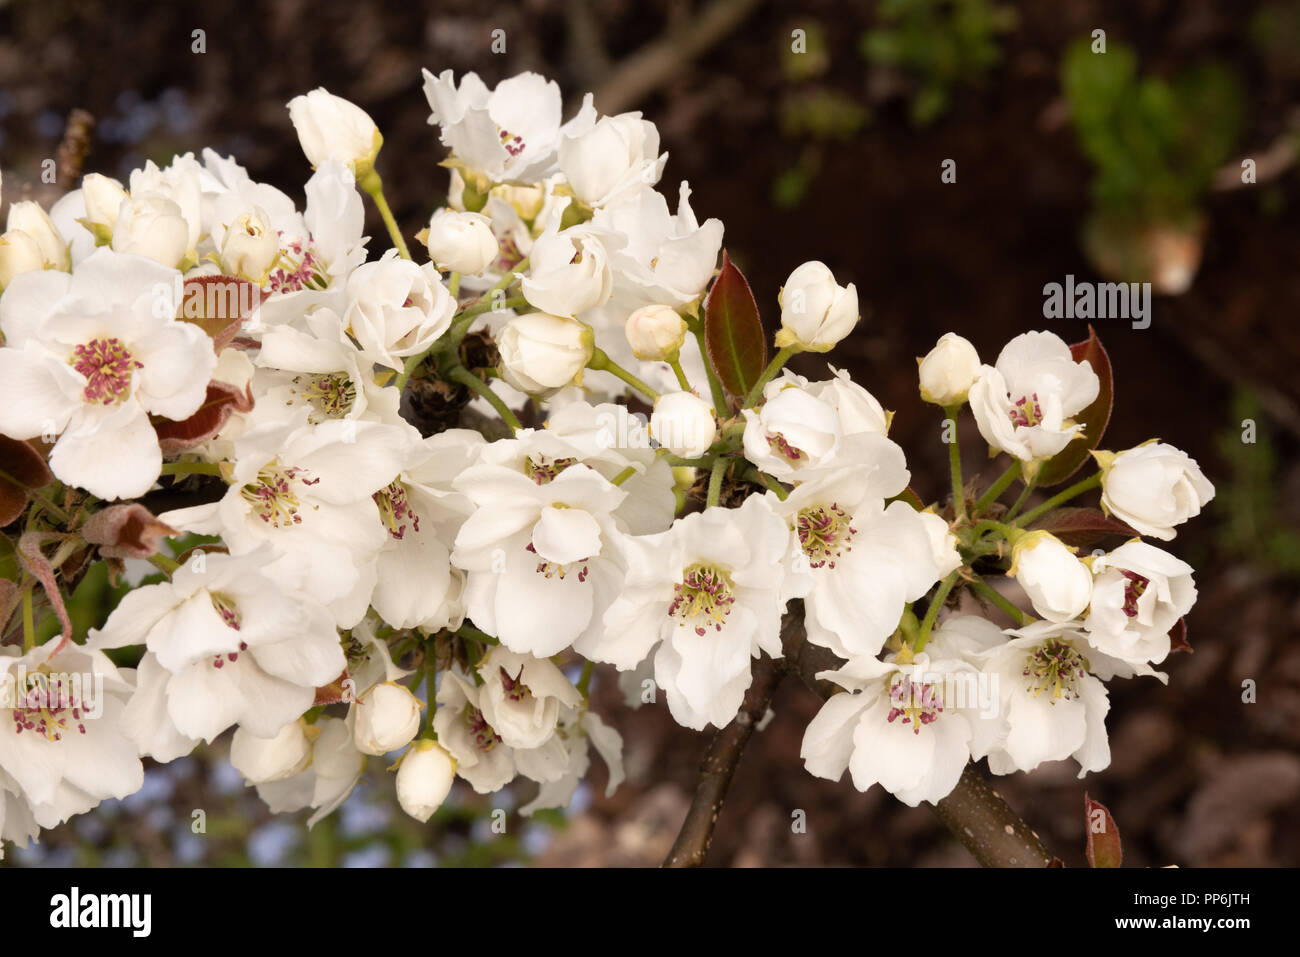 Asian pear tree blossom Stock Photo